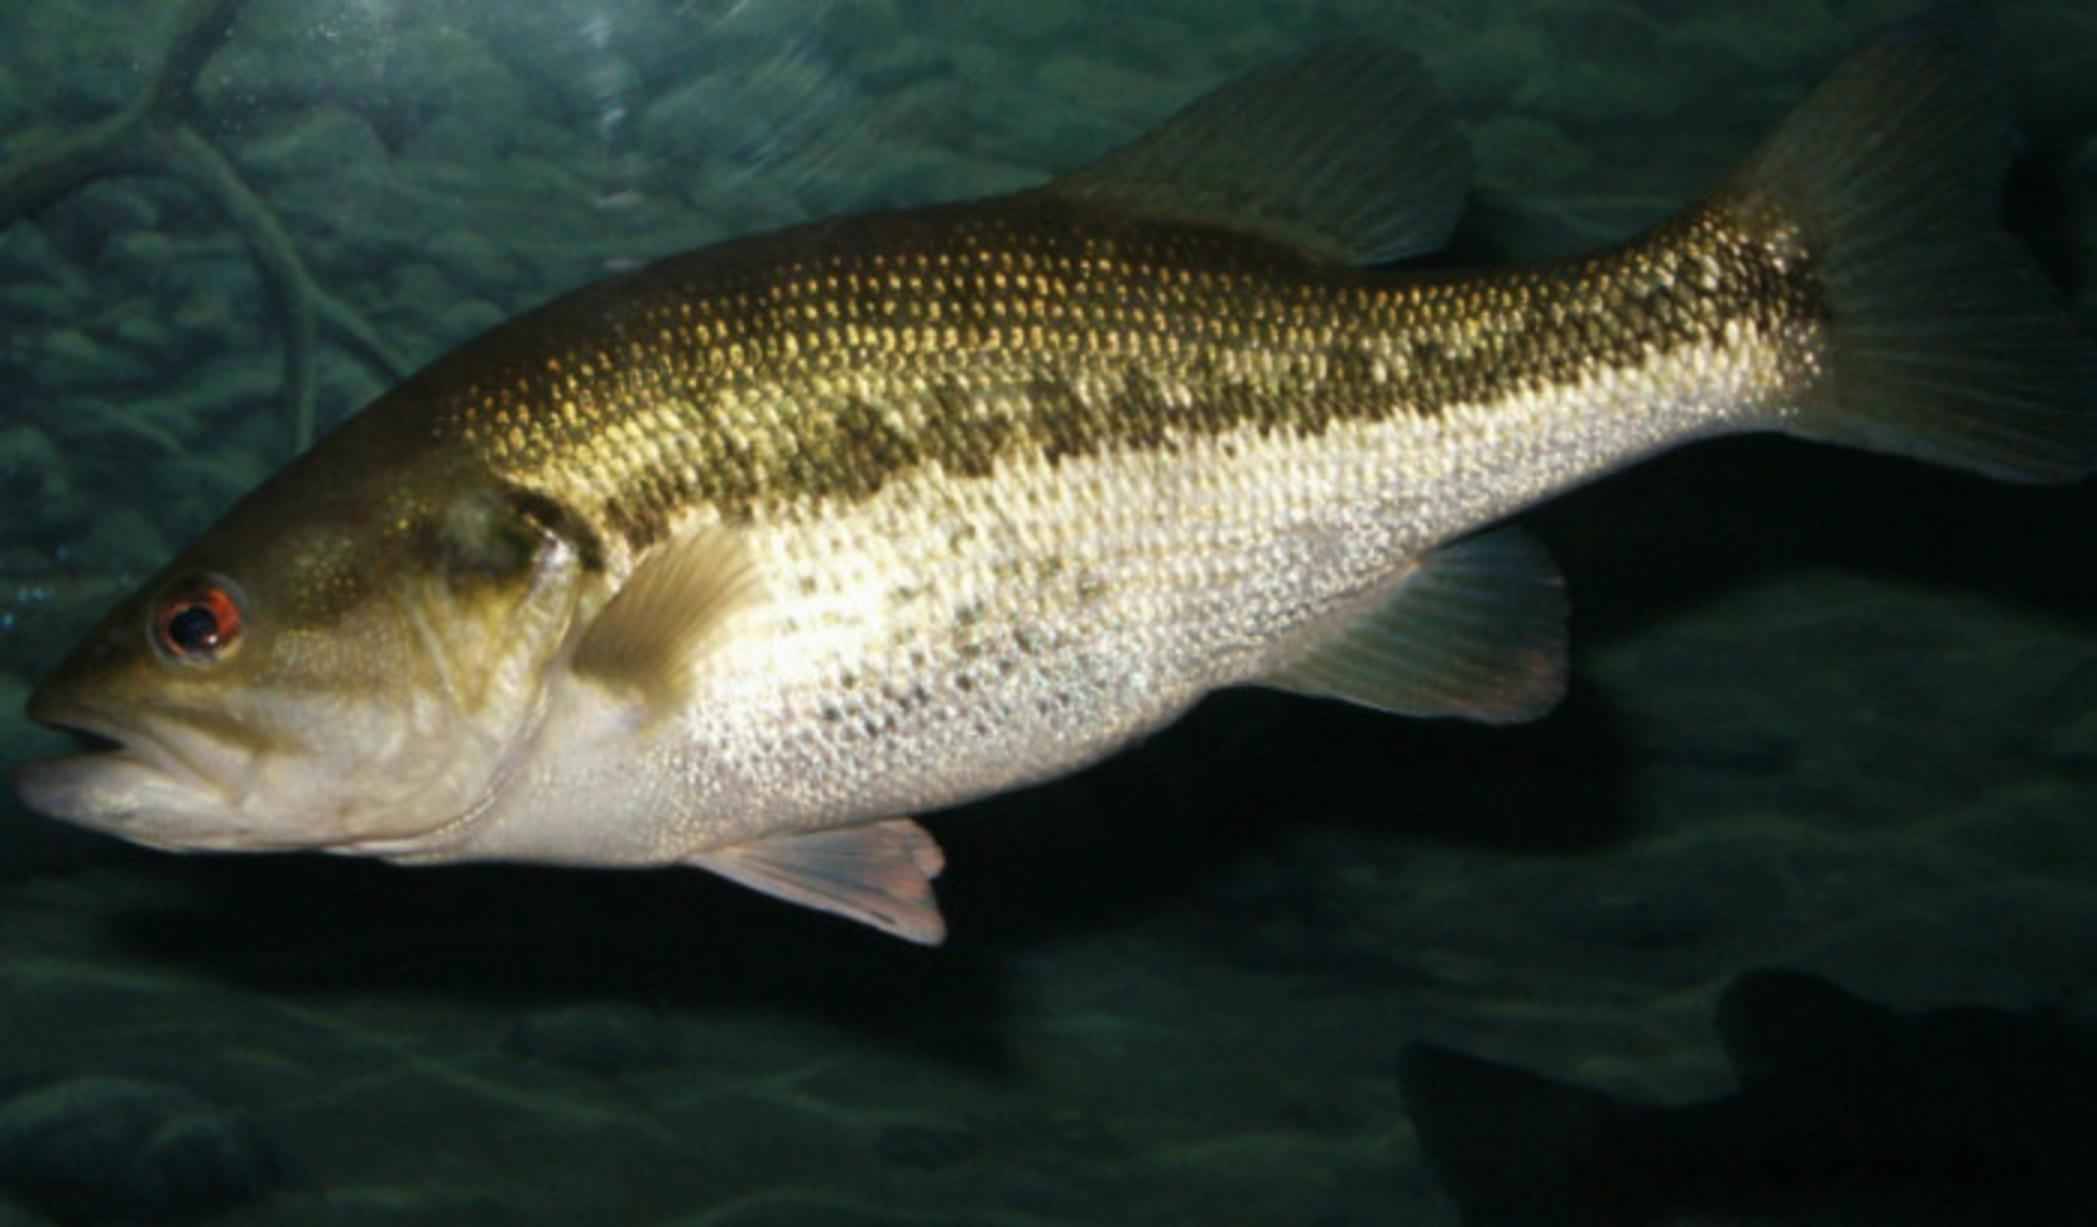 Басс рыба - описание, среда обитания, размножение, как ловить